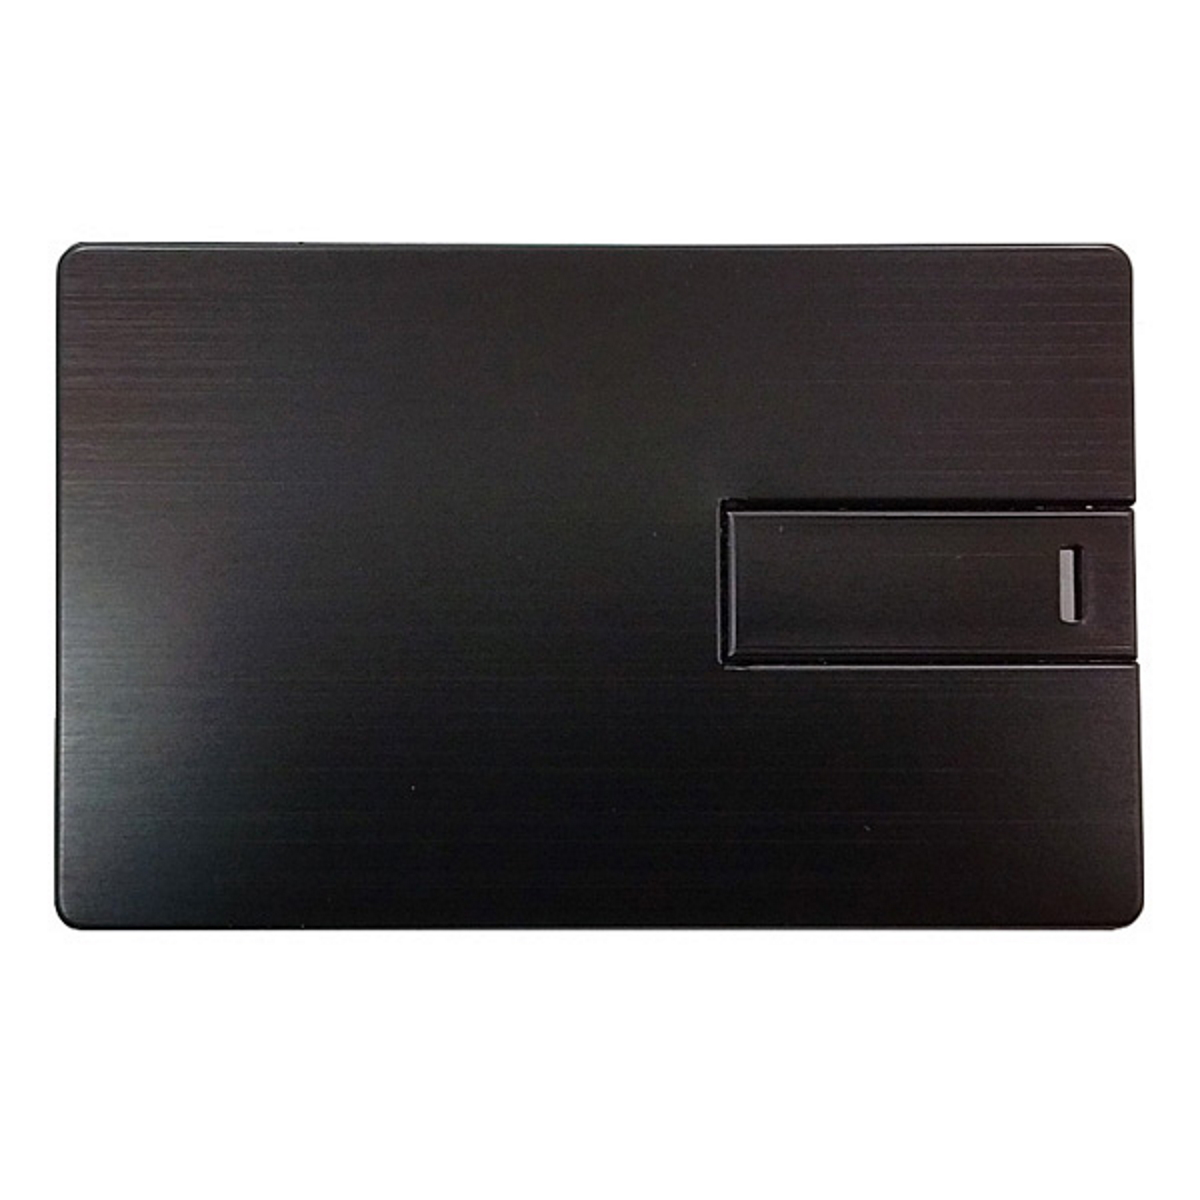 (Schwarz, ® USB 128 Metall-Kreditkarte GERMANY GB) USB-Stick